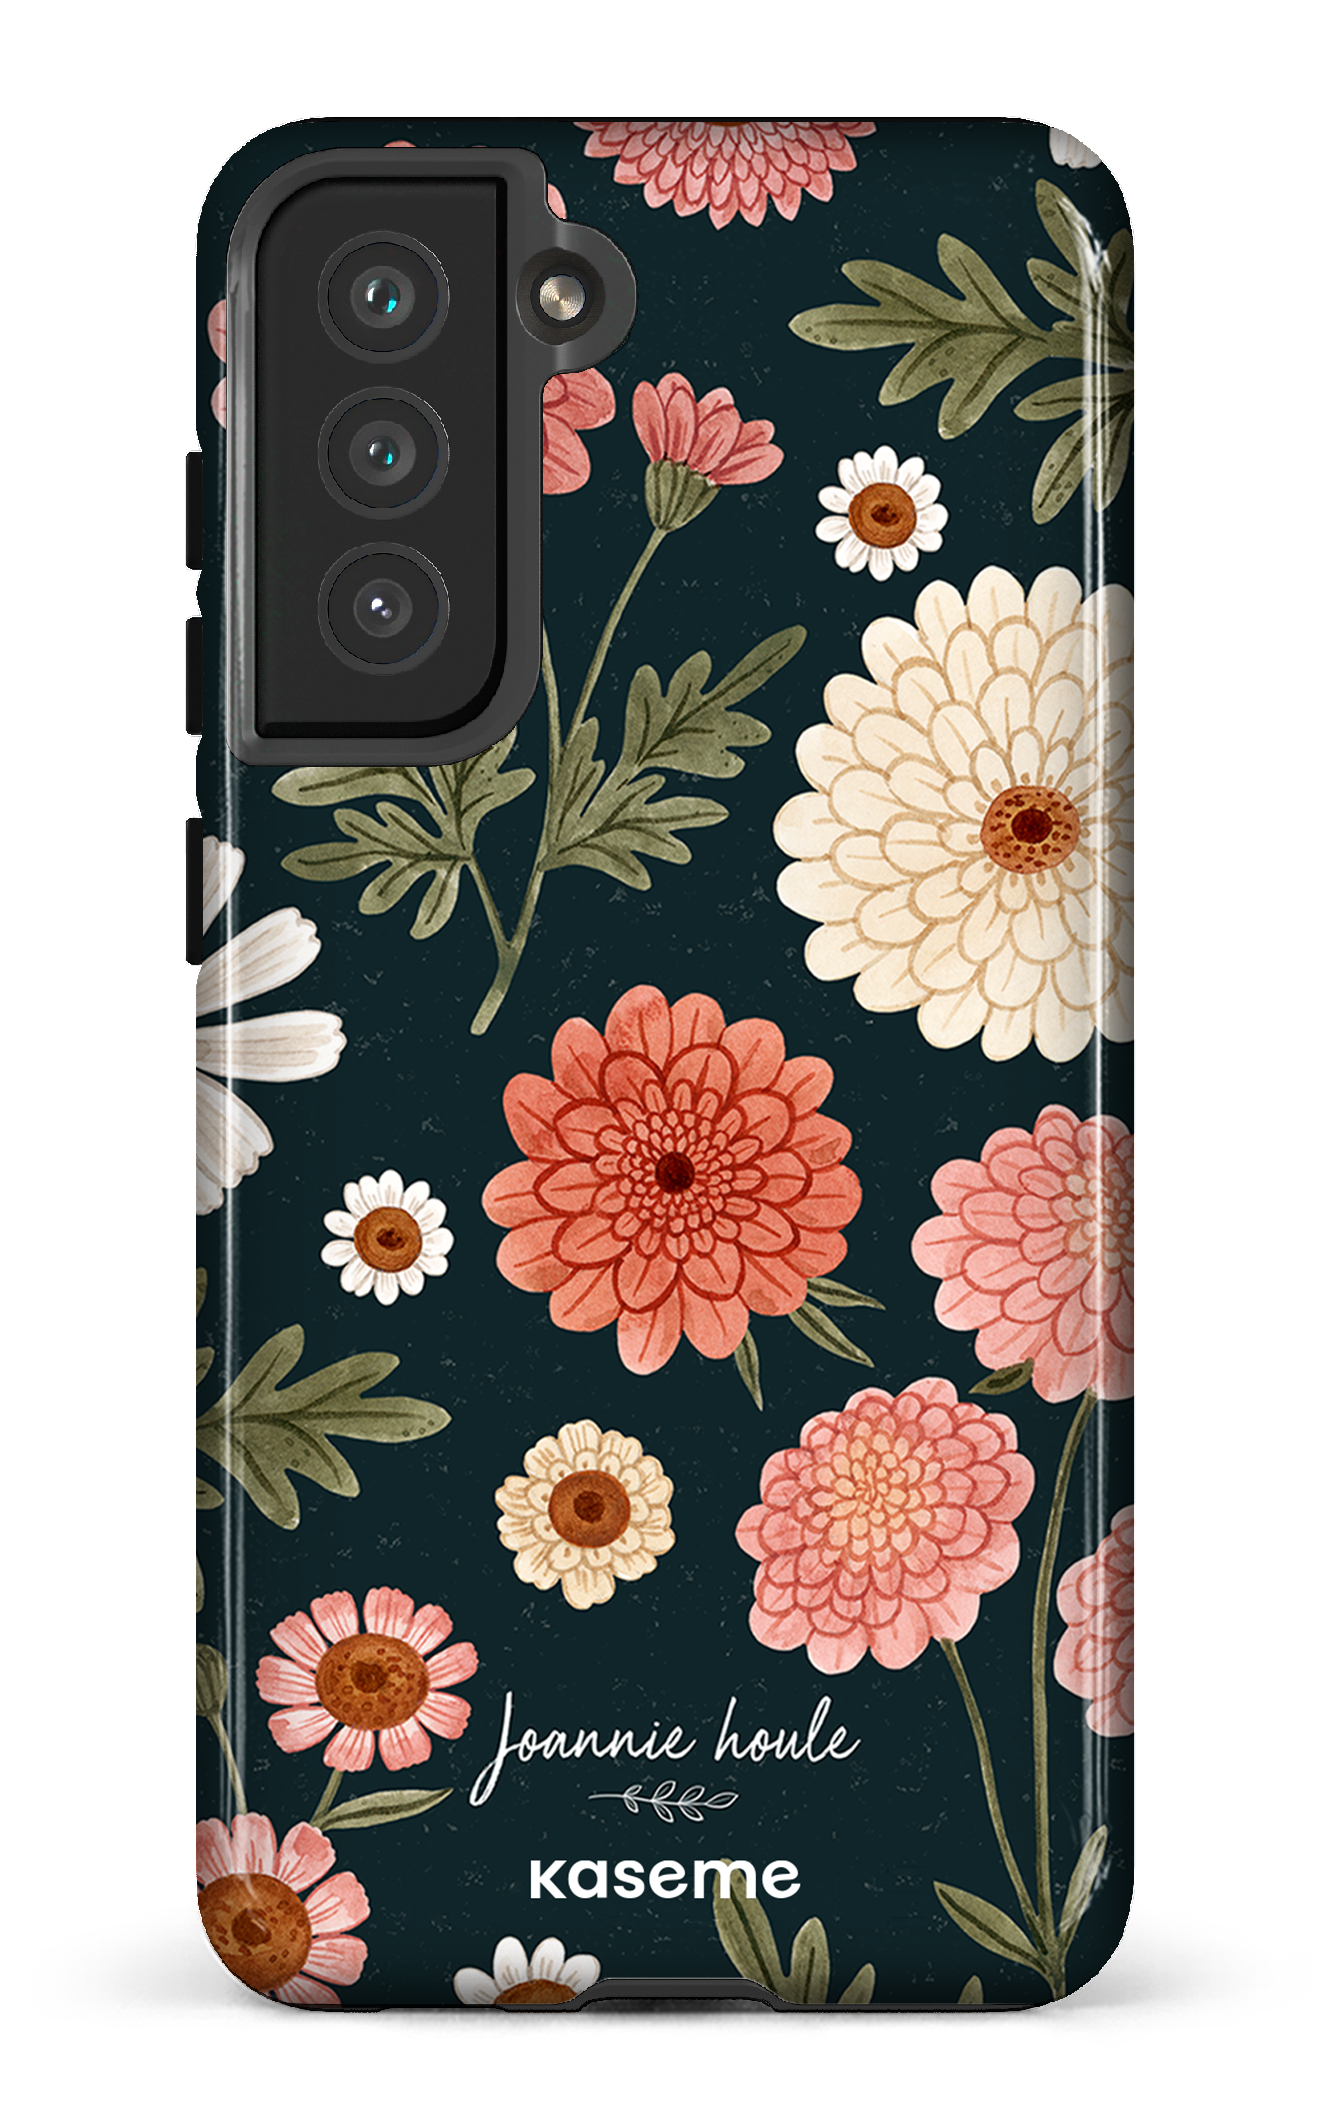 Chrysanthemums by Joannie Houle - Galaxy S21 FE